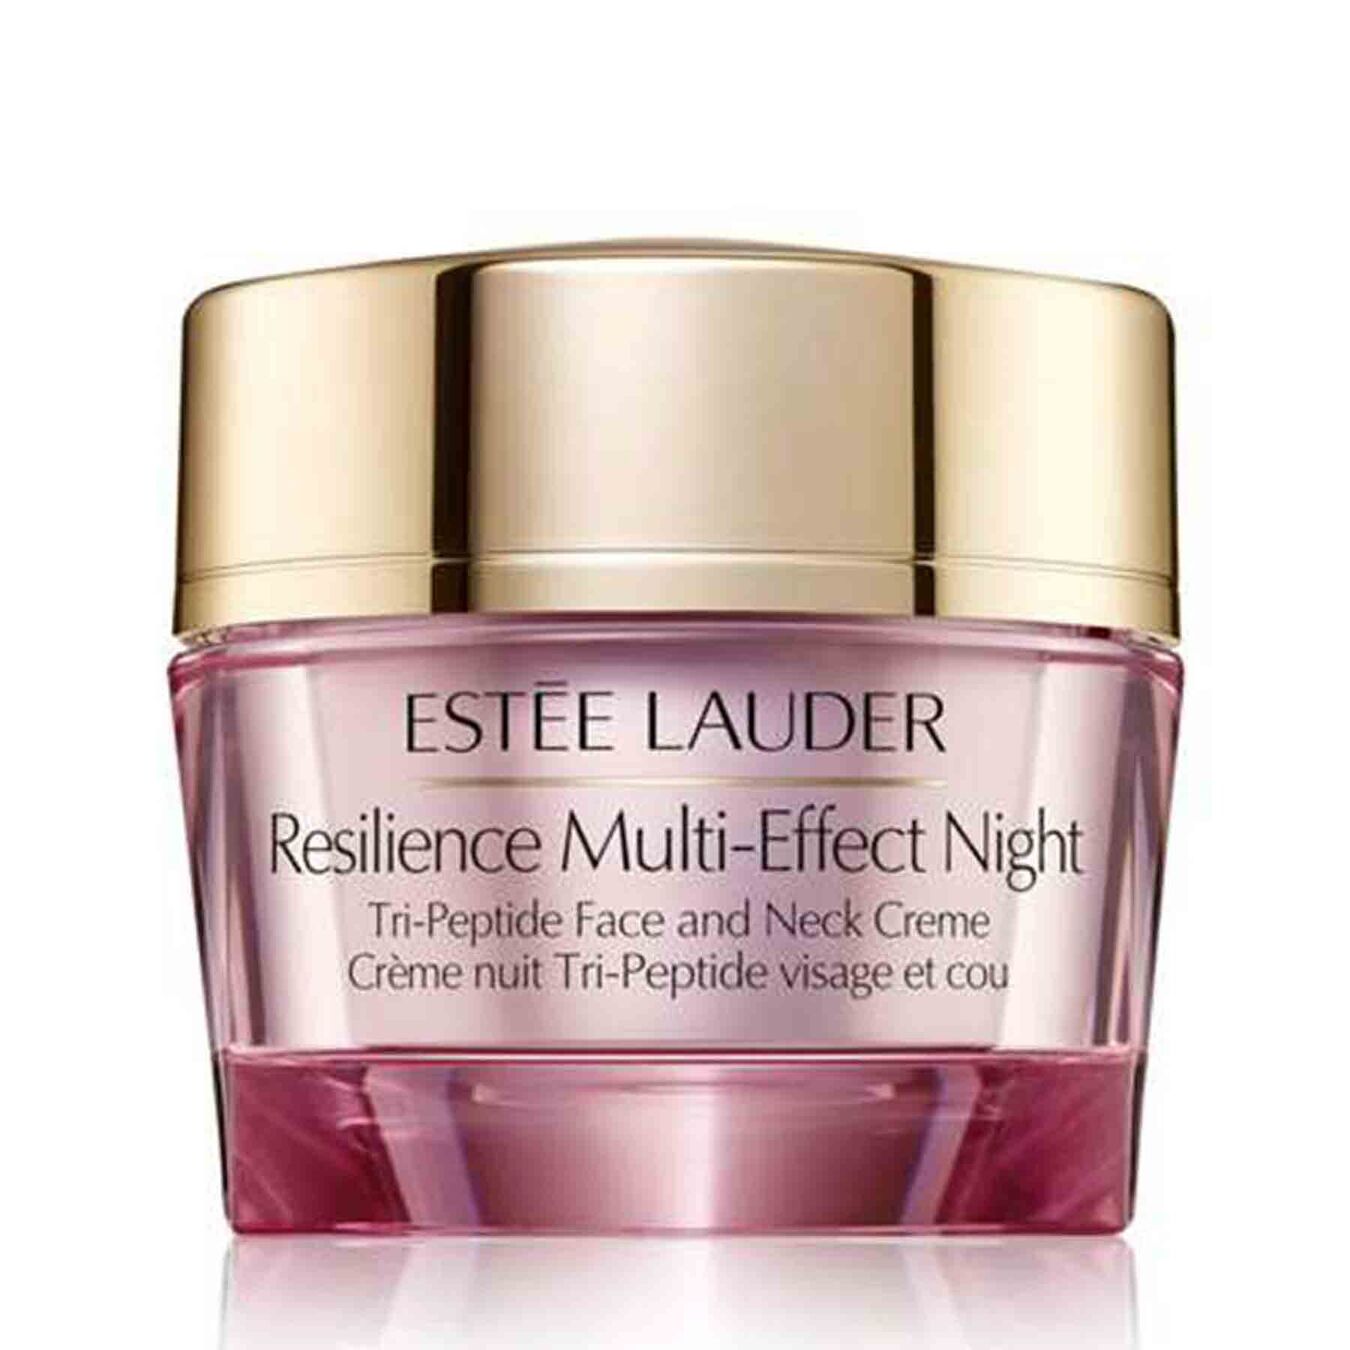 Estée Lauder Resilience Lift Night Face and Neck Creme 50ml Damen von Estée Lauder